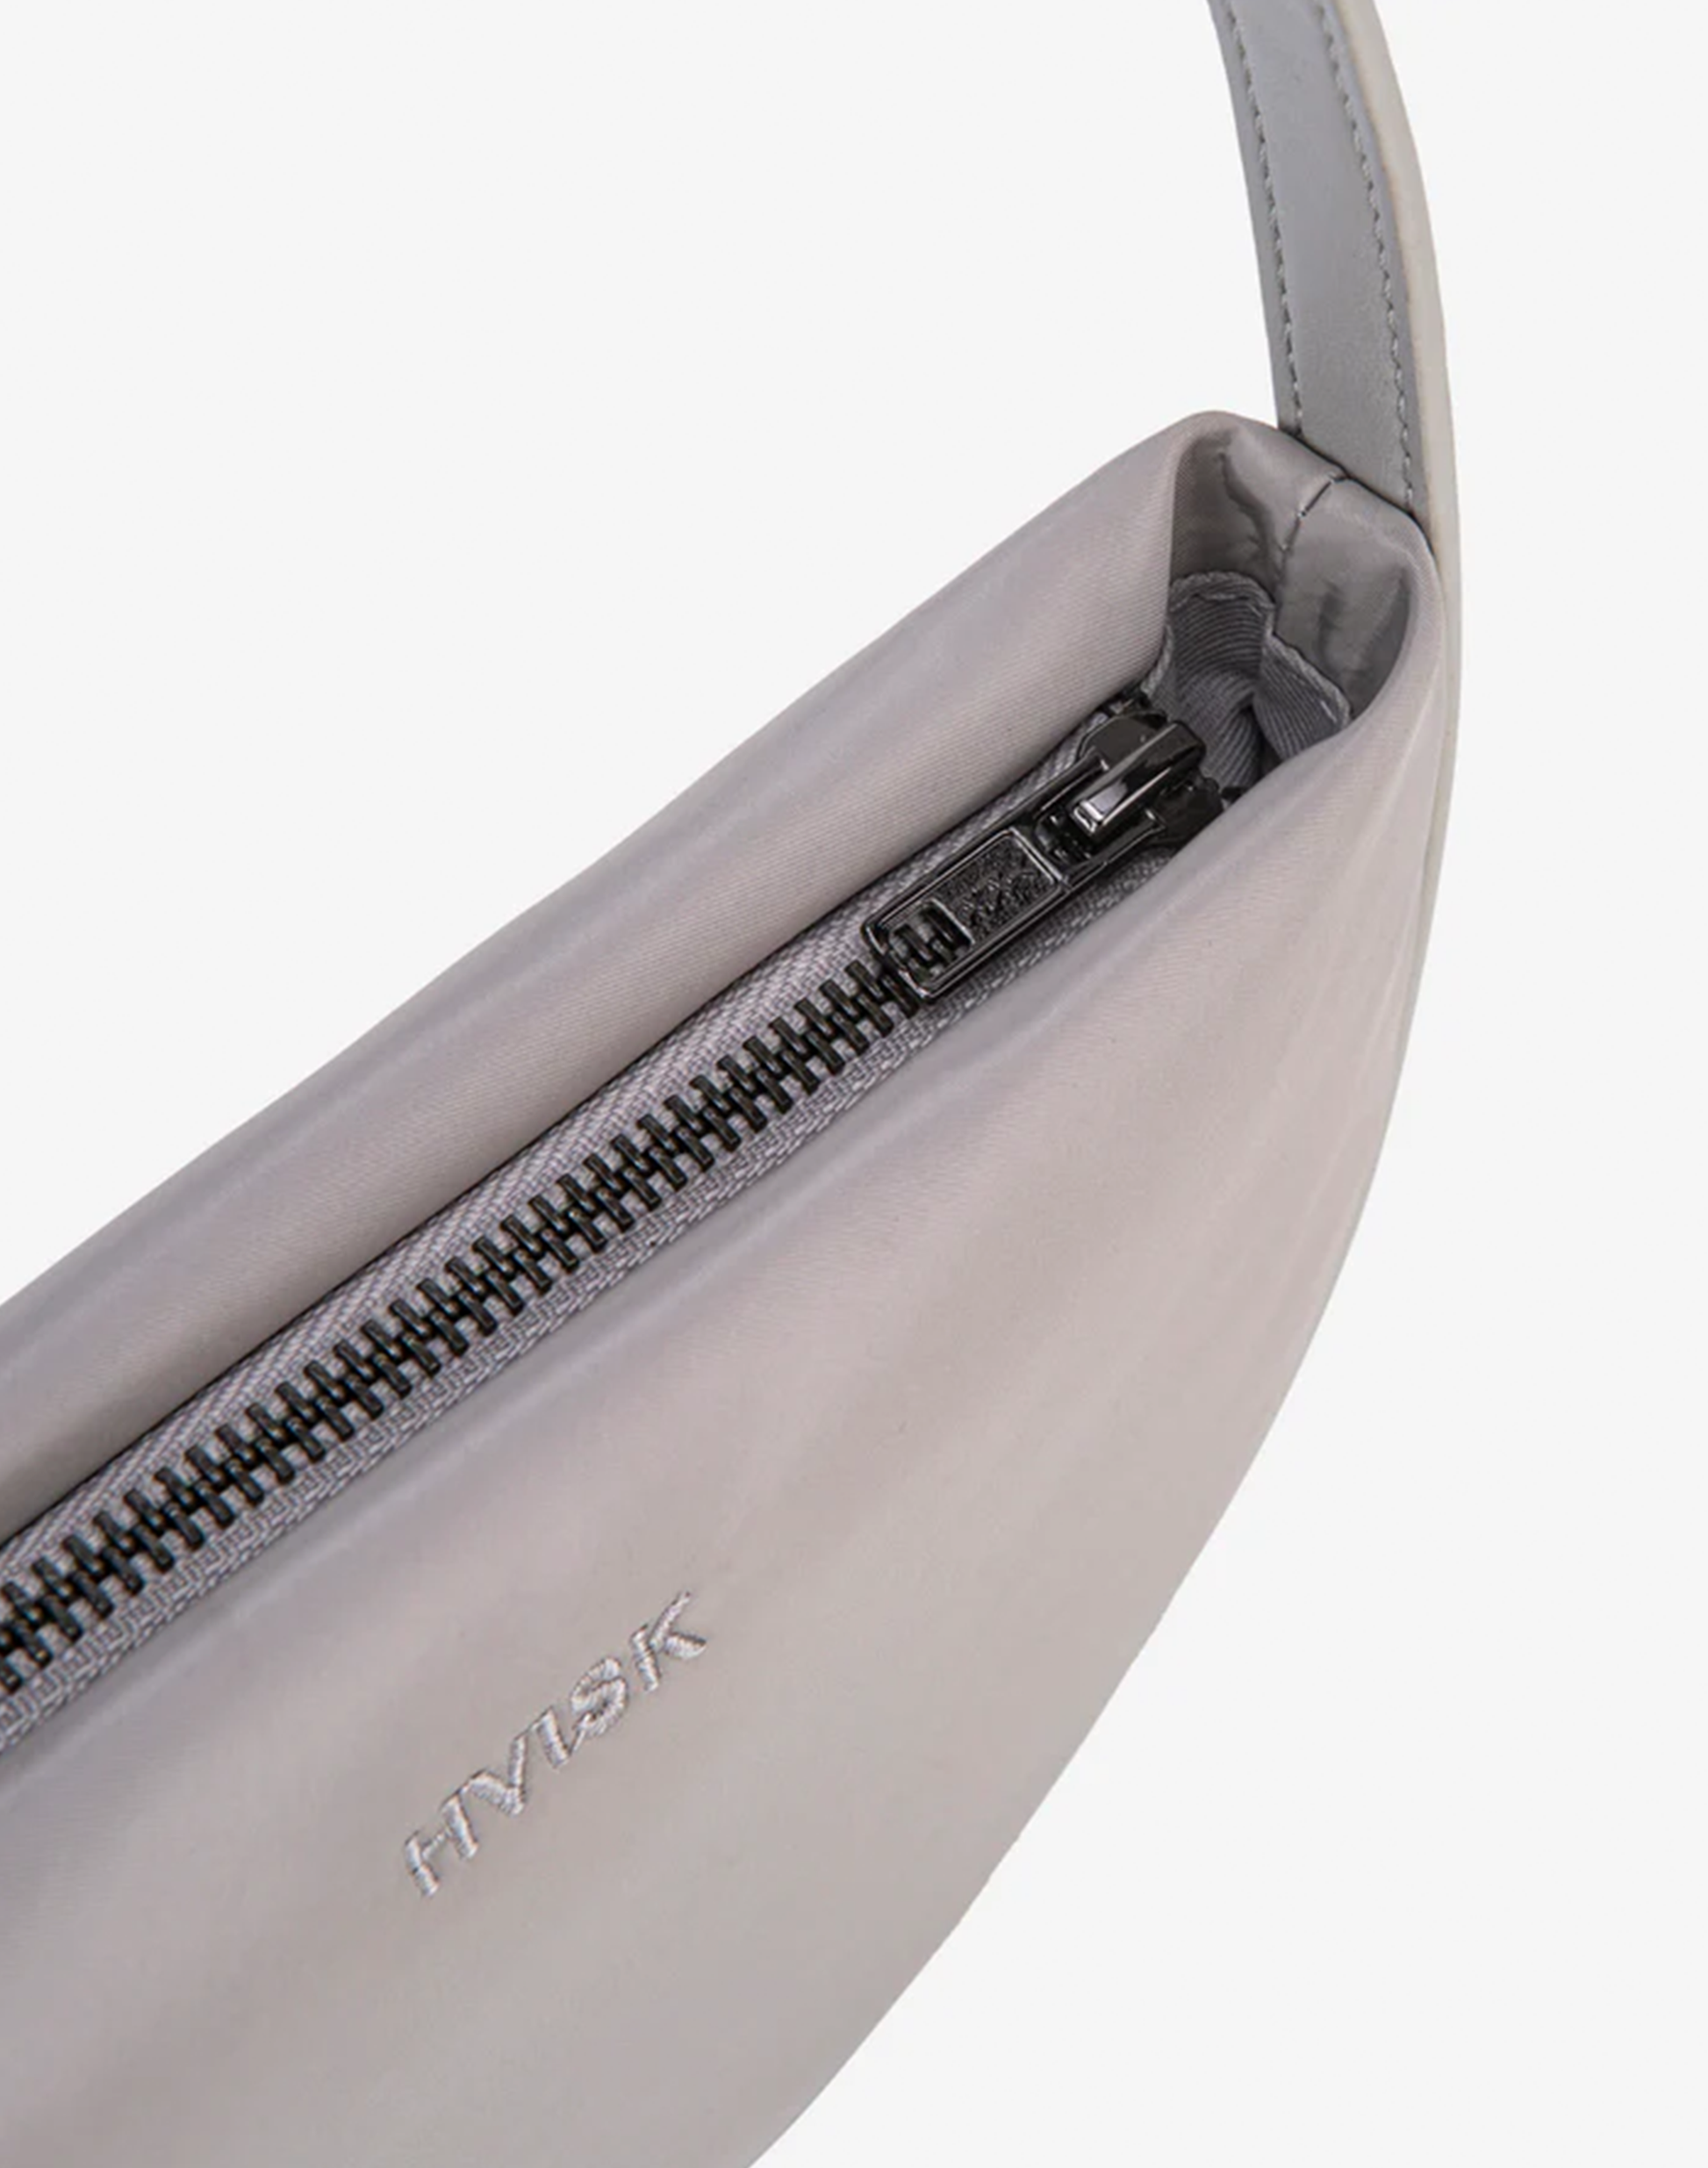 HVISK Halo Handtasche in Cloudy Grey, Ansicht Detail